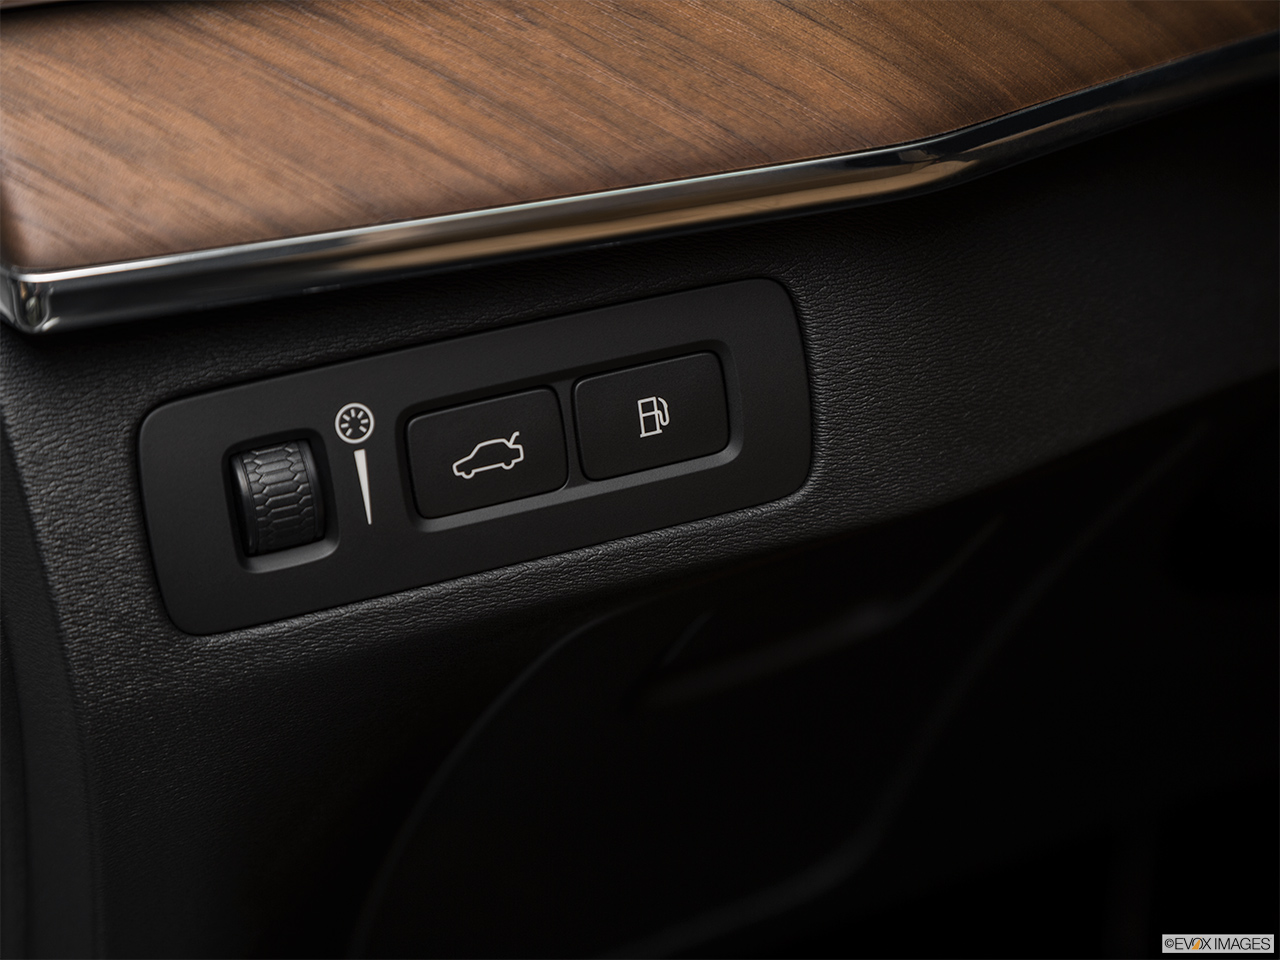 2018 Volvo XC90 T8 Inscription eAWD Plug-in Hybrid Gas cap release. 